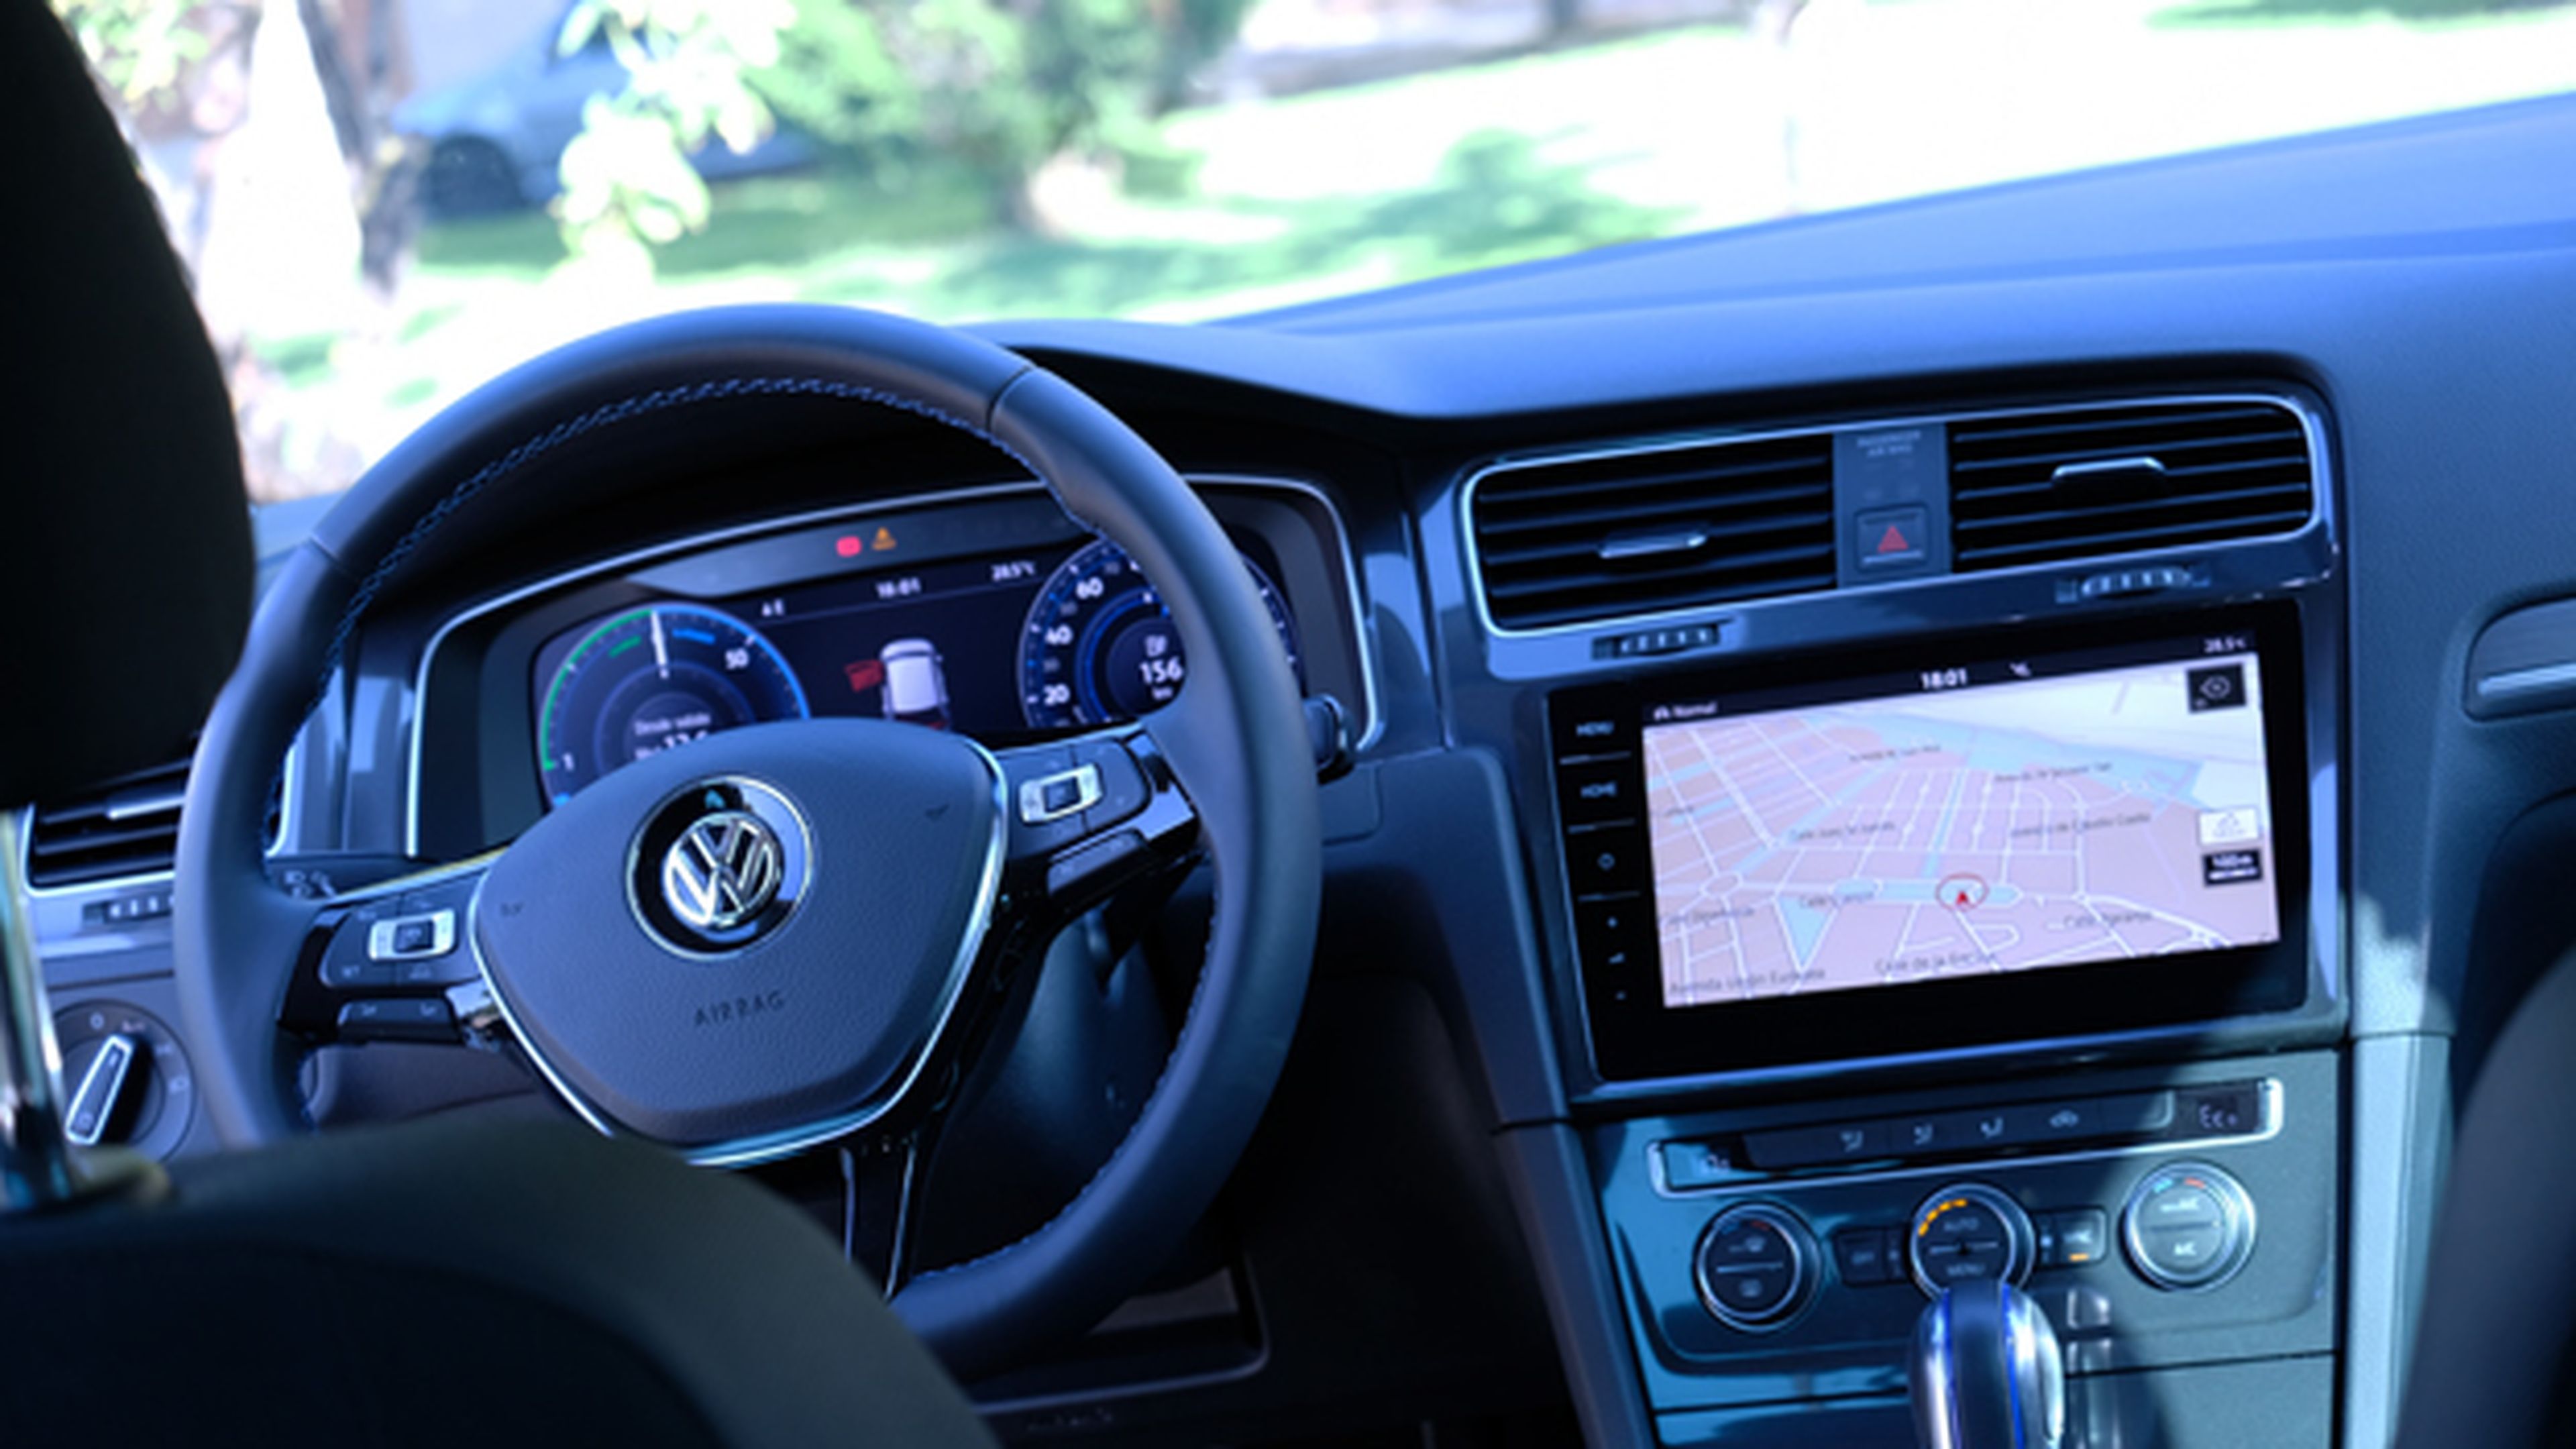 Hablemos ahora de la tecnología que lleva a bordo este coche eléctrico de Volkswagen